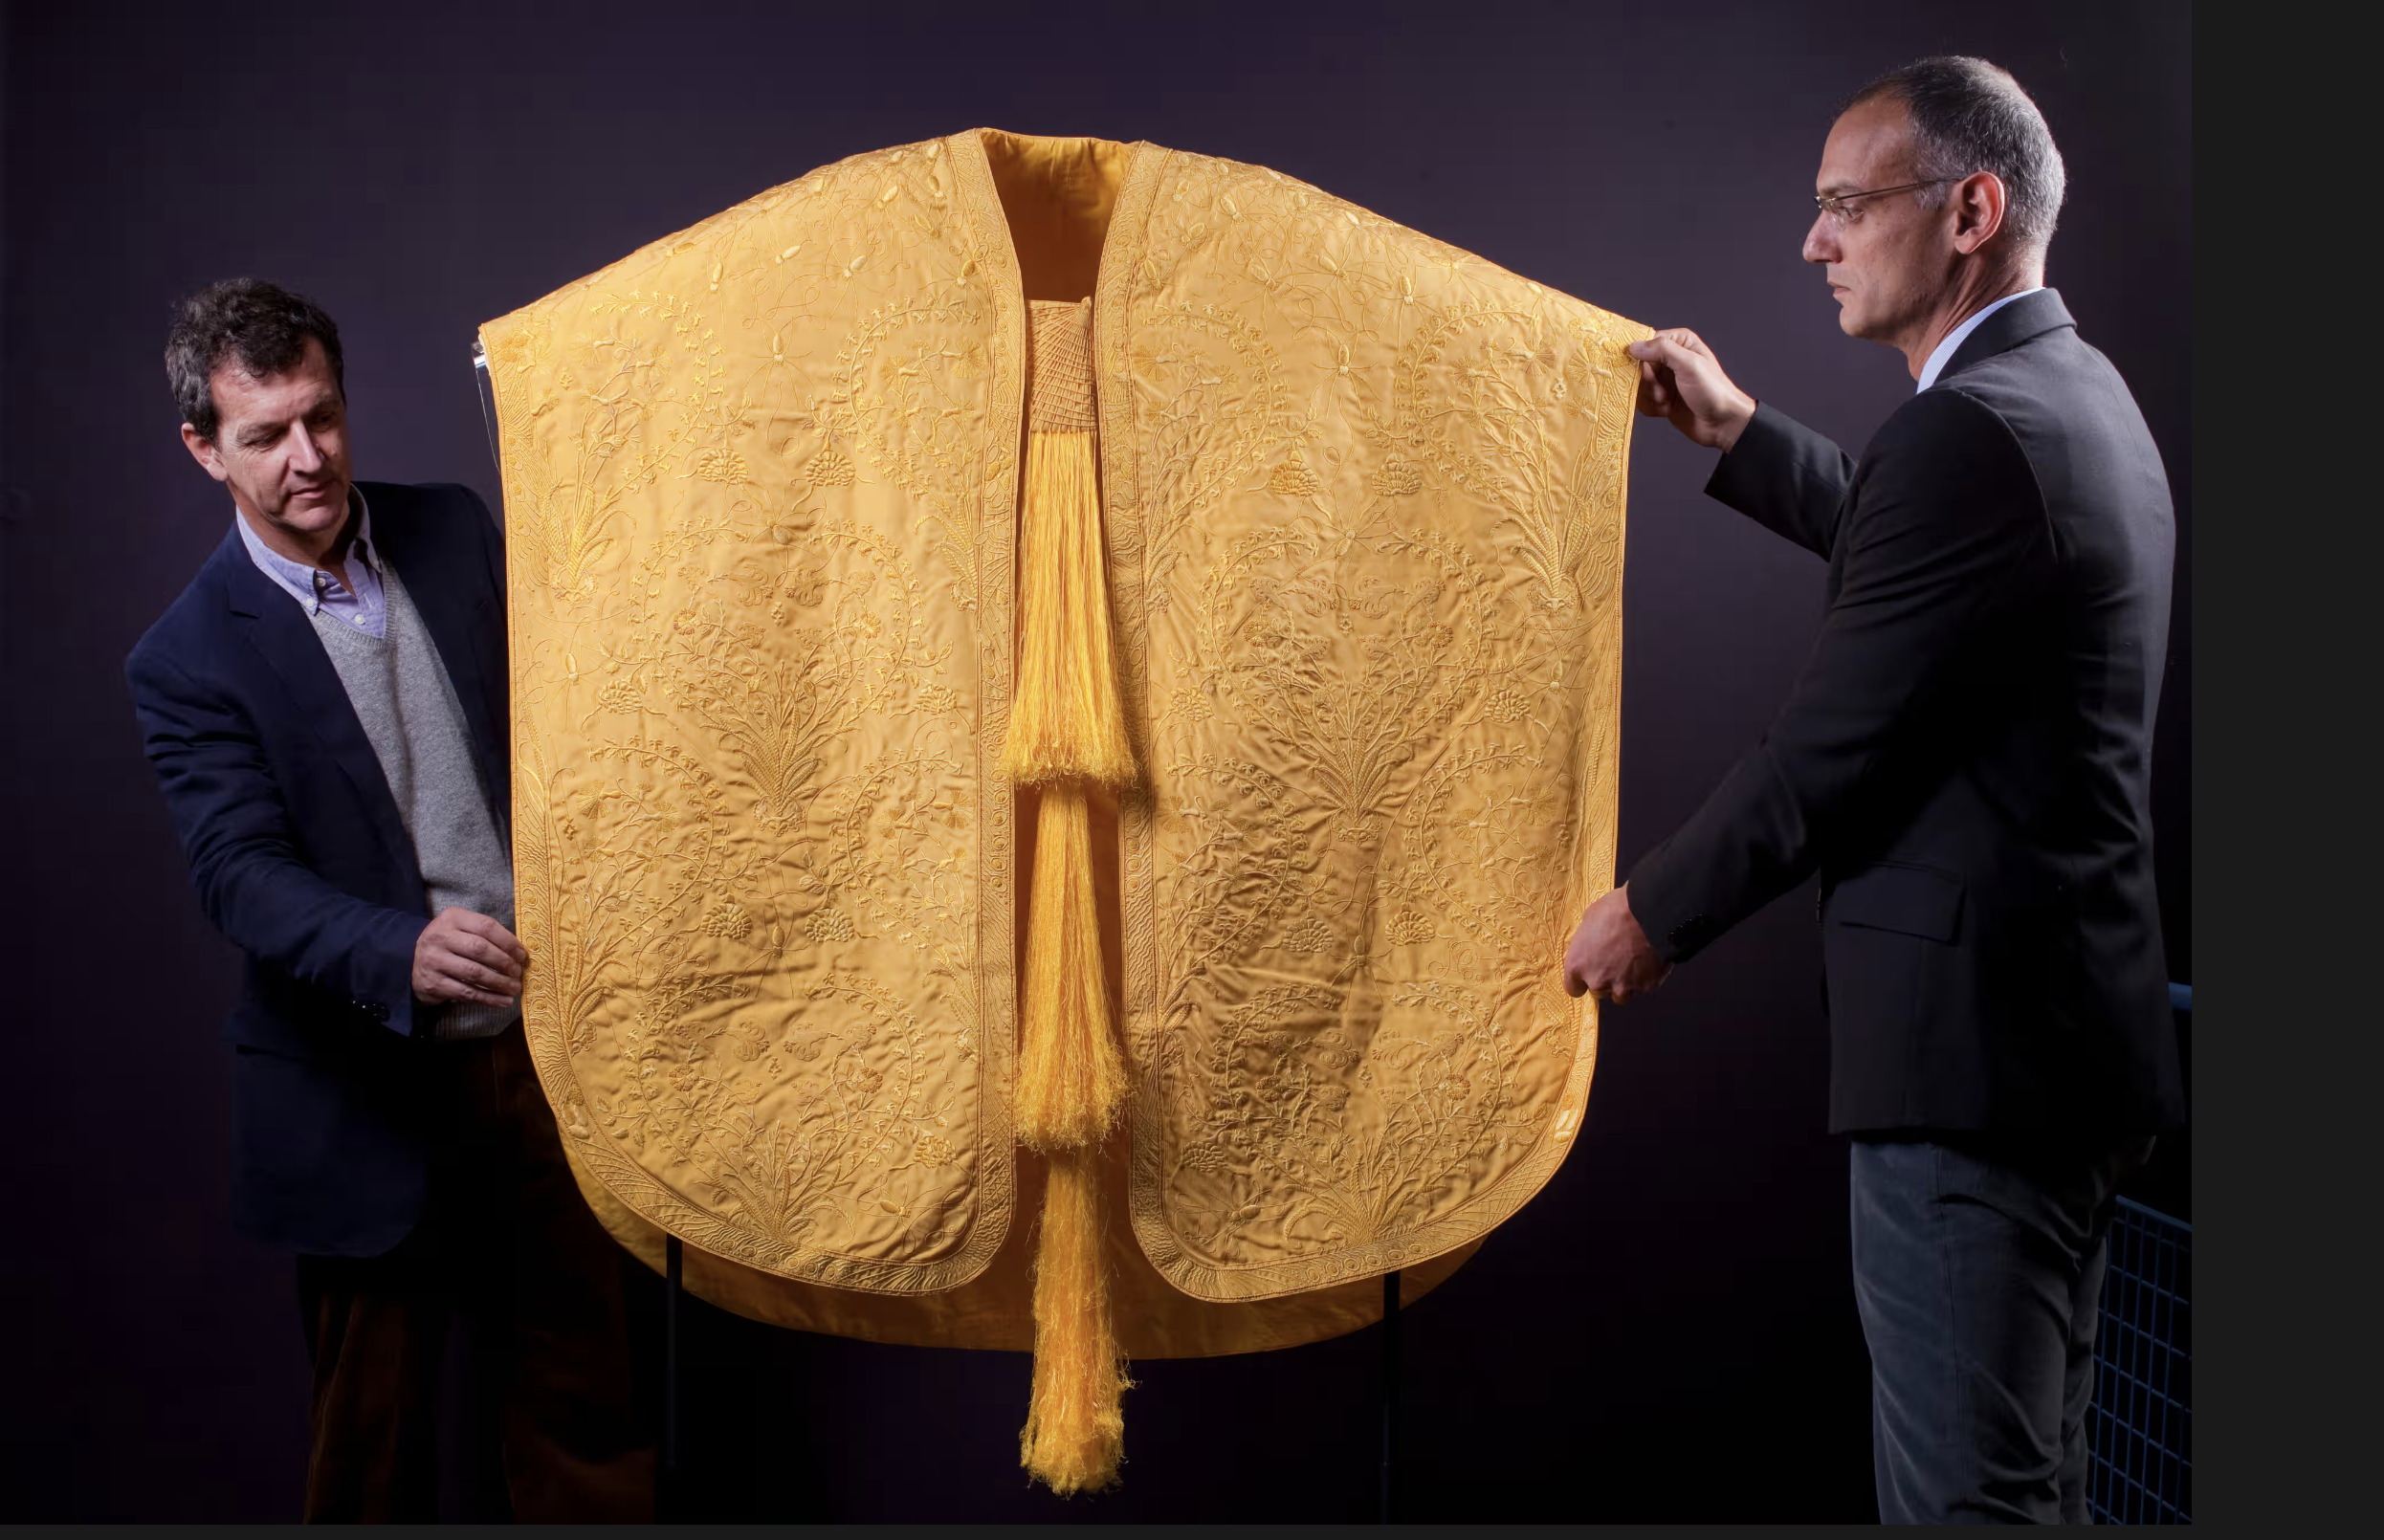 Việc dệt tơ nhện vẫn còn rất tốn kém; Chiếc áo choàng vàng lấp lánh này là một trong hai bộ quần áo duy nhất được dệt từ tơ nhện và về cơ bản là vô giá. Ảnh: David Levene/The Guardian